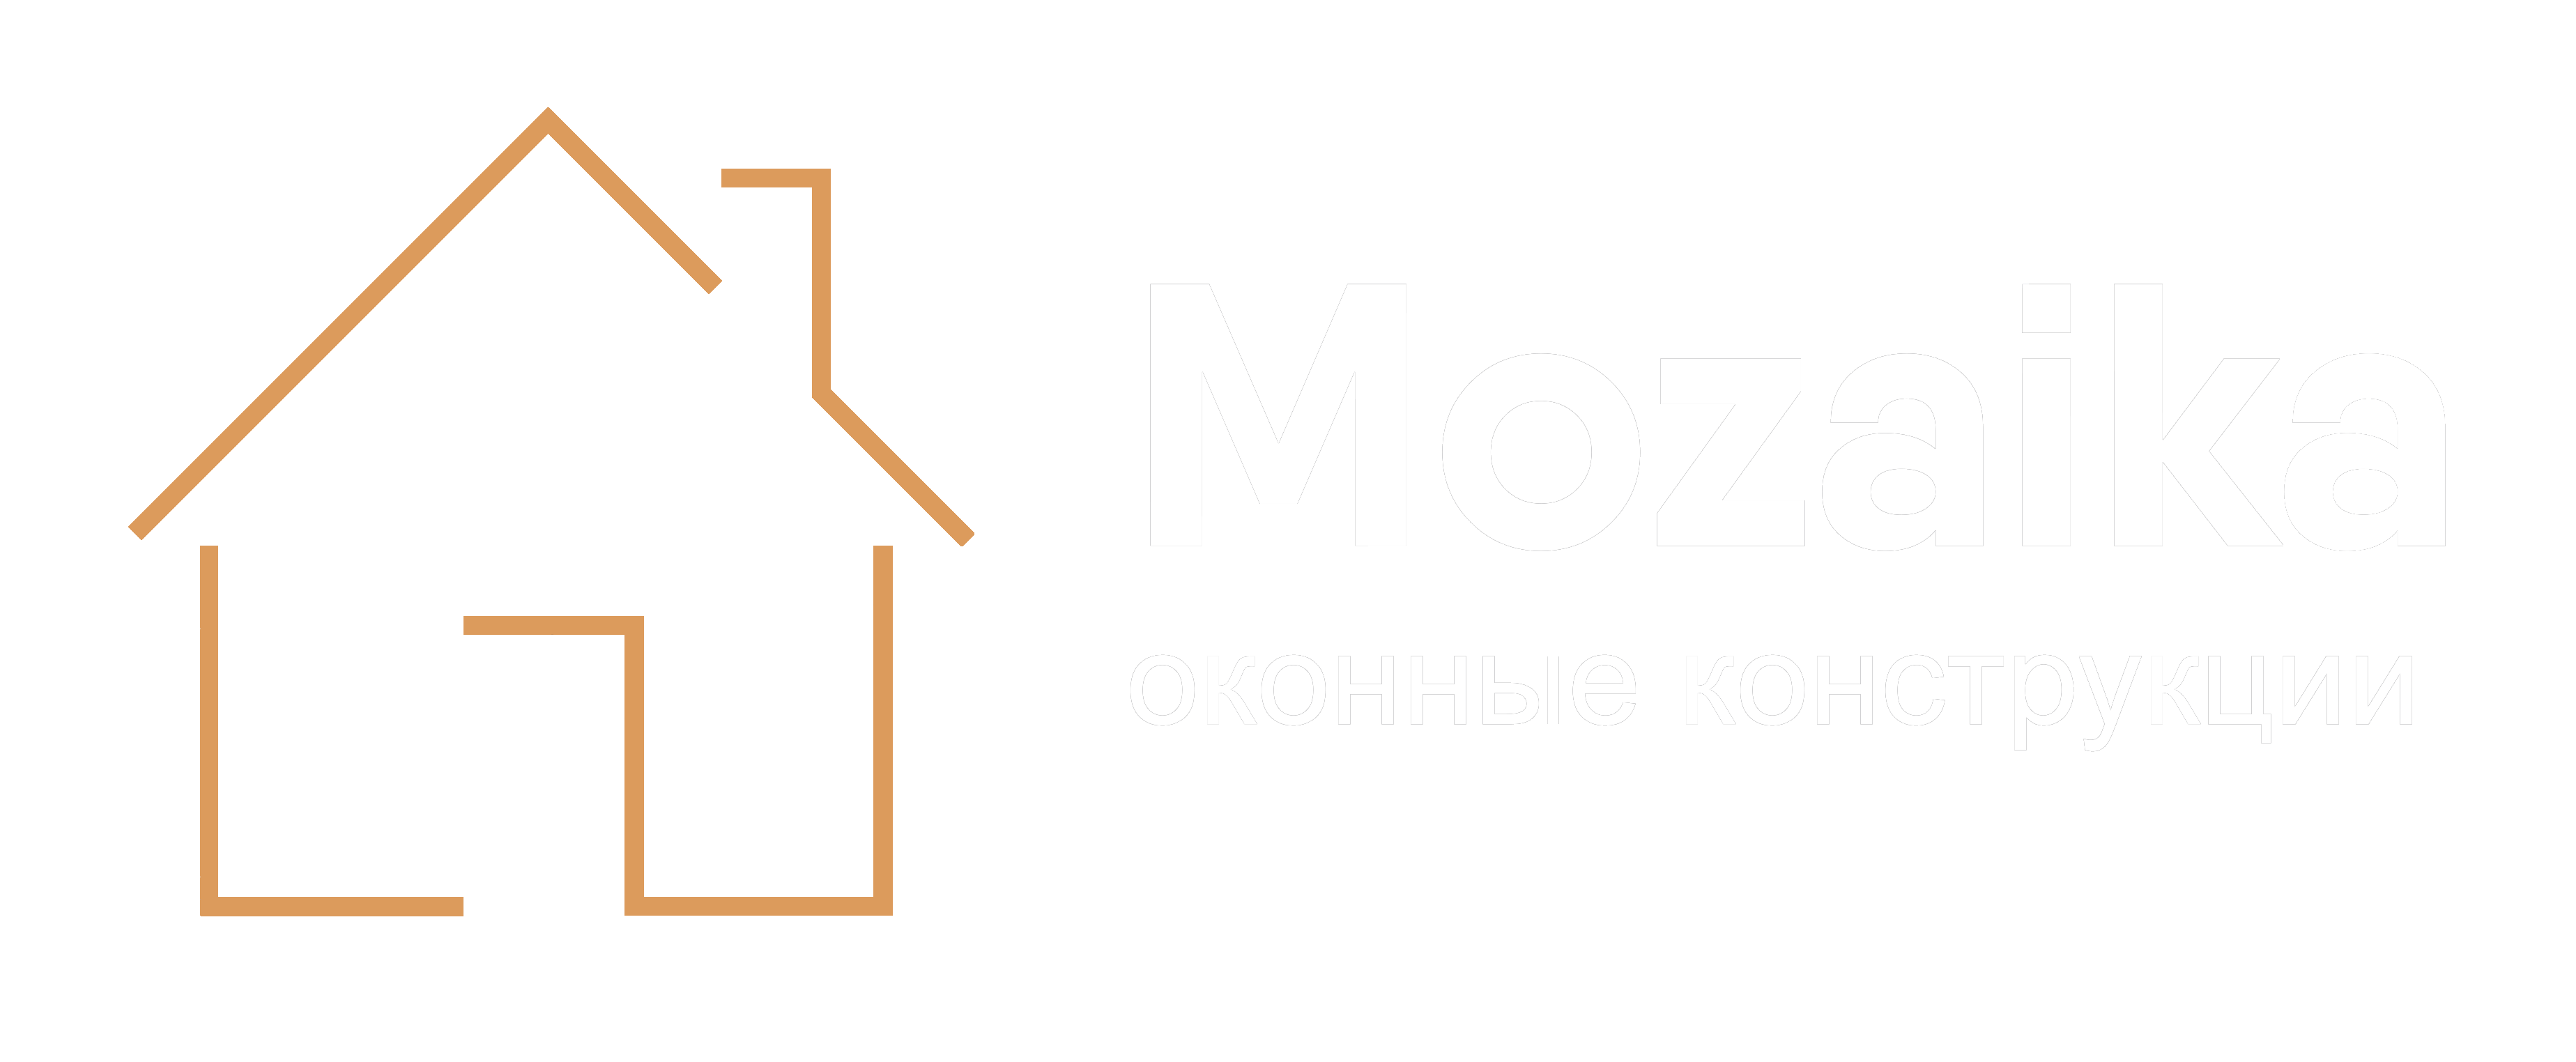 Официальный сайт Mozaika окна